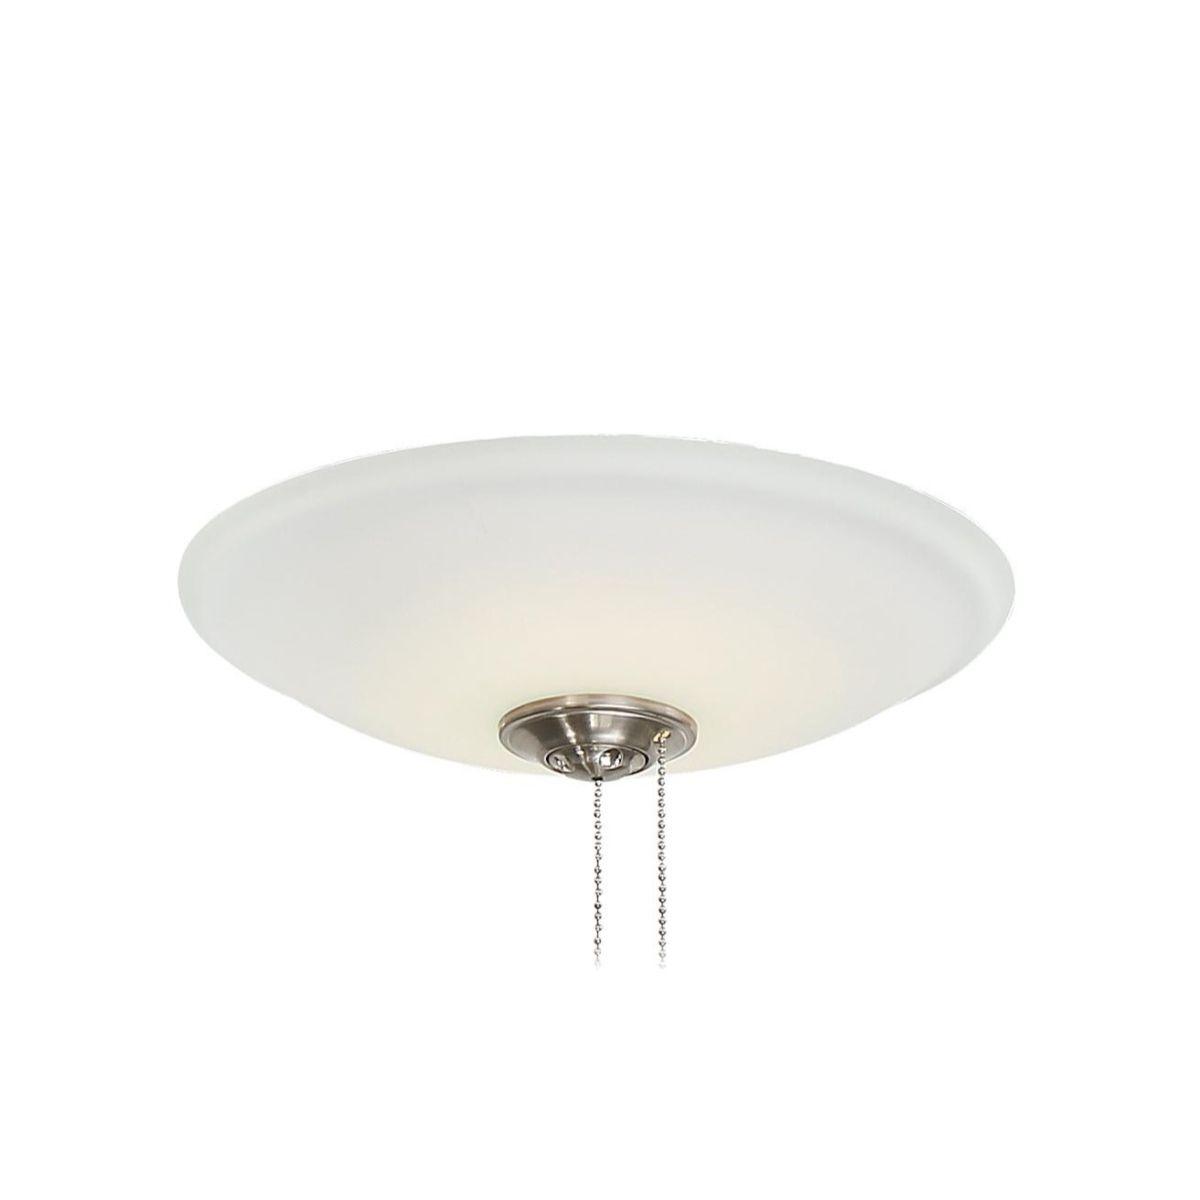 13 In. Ceiling Fan Light Kit, White Finish - Bees Lighting